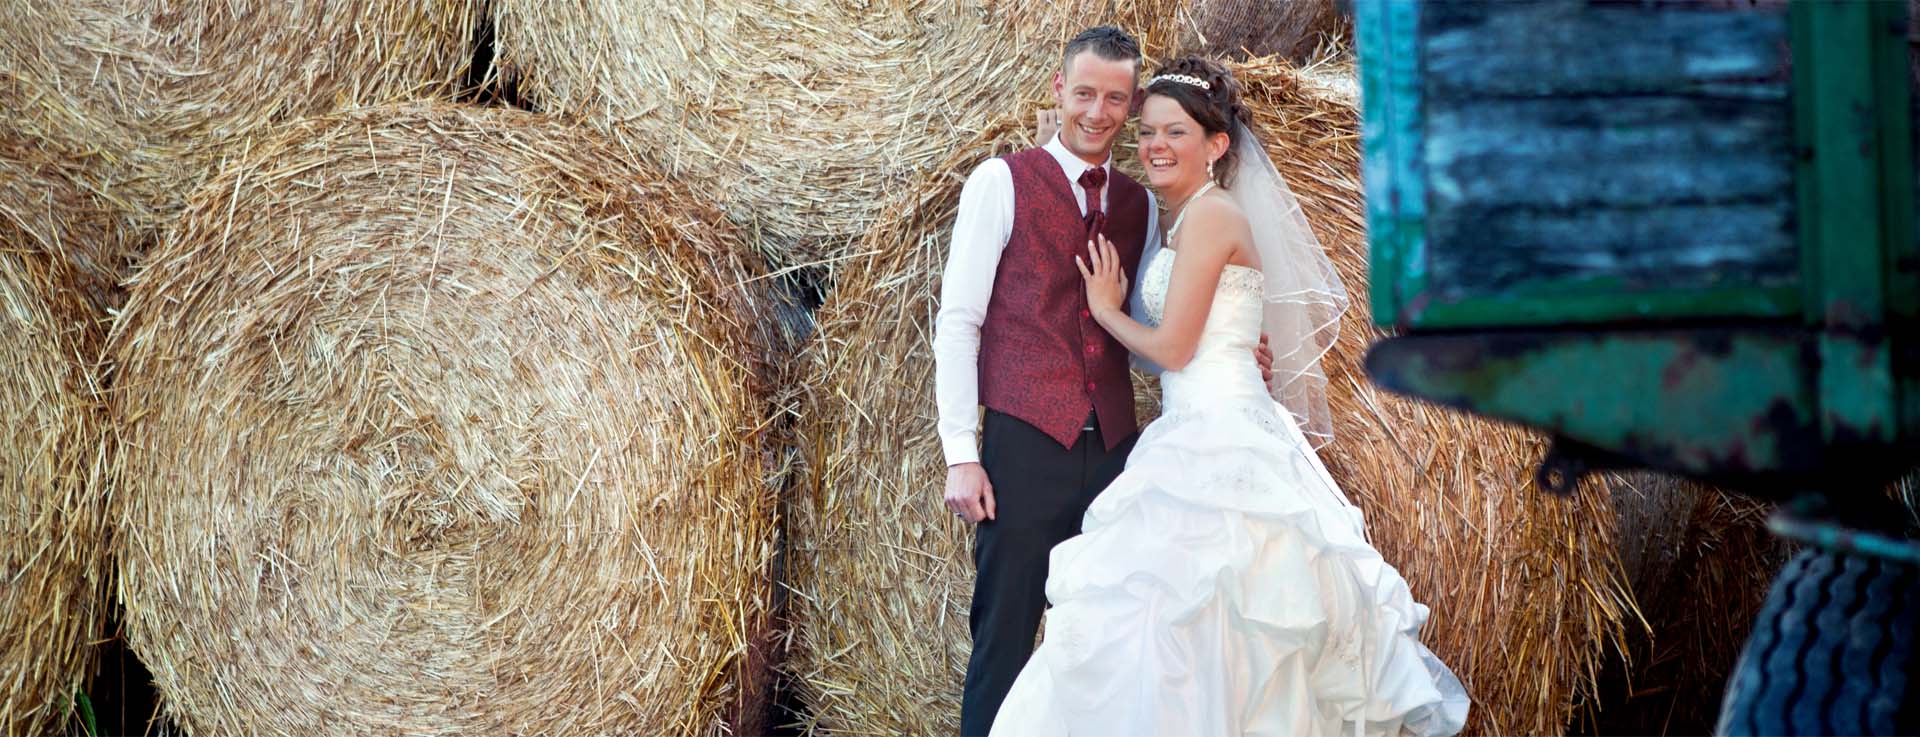 Landhochzeit, ein Brautpaar mit Strohballen und Traktor